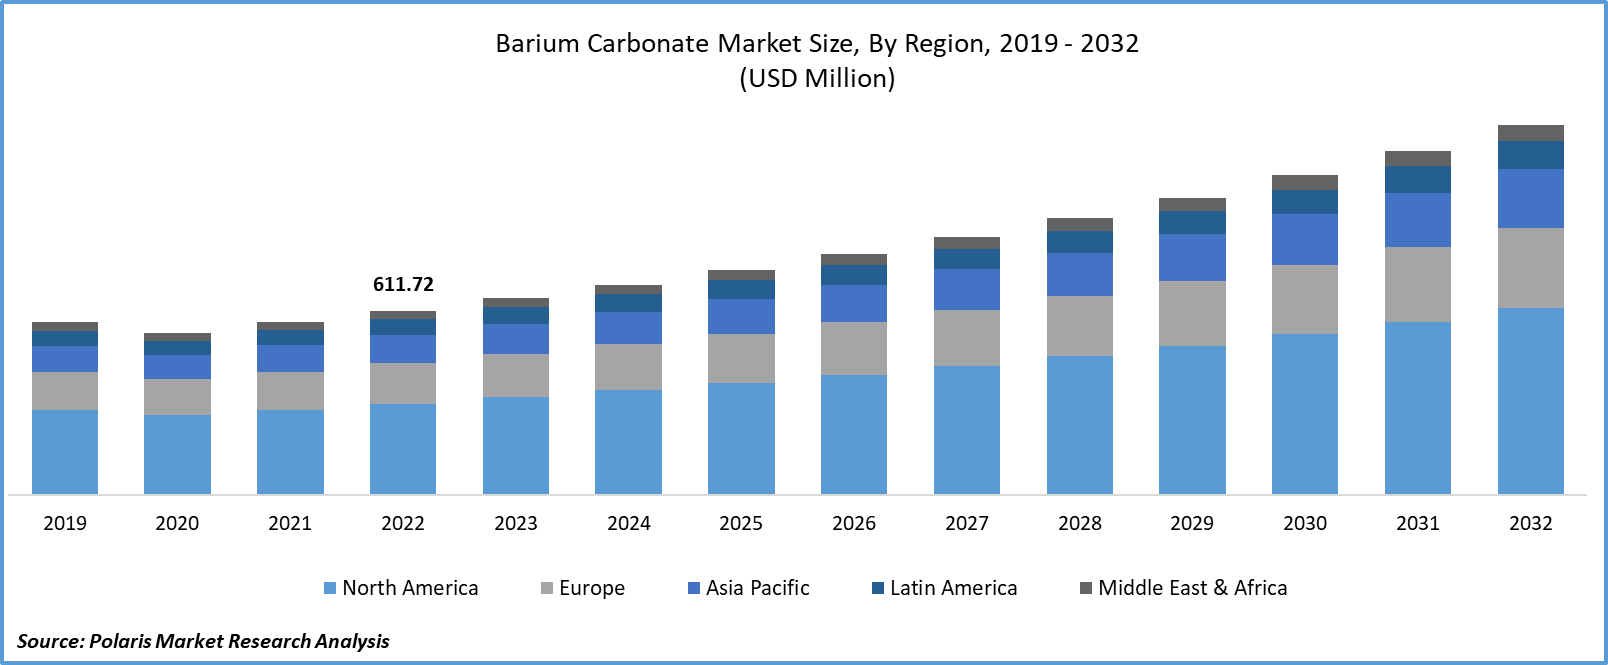 Barium Carbonate Market Size